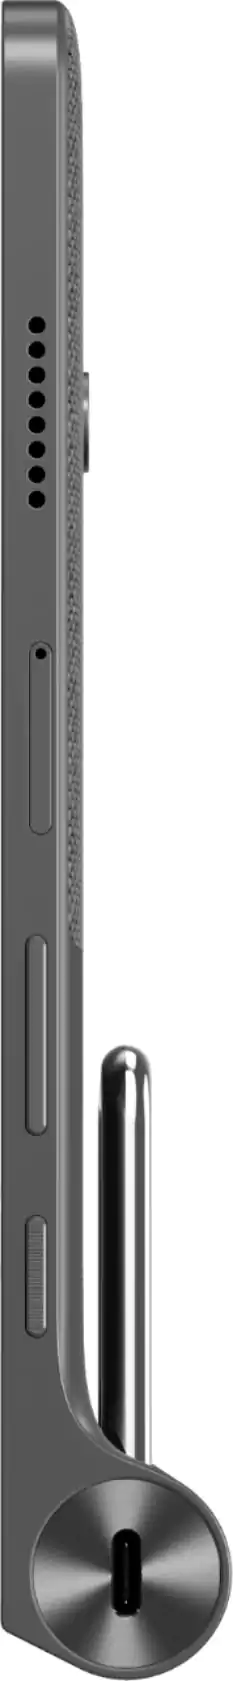 تابلت لينوفو يوجا تاب 11، شاشة 11 بوصة، ذاكرة داخلية 256 جيجابايت، رامات 8 جيجابايت، شبكة الجيل الرابع، رمادي